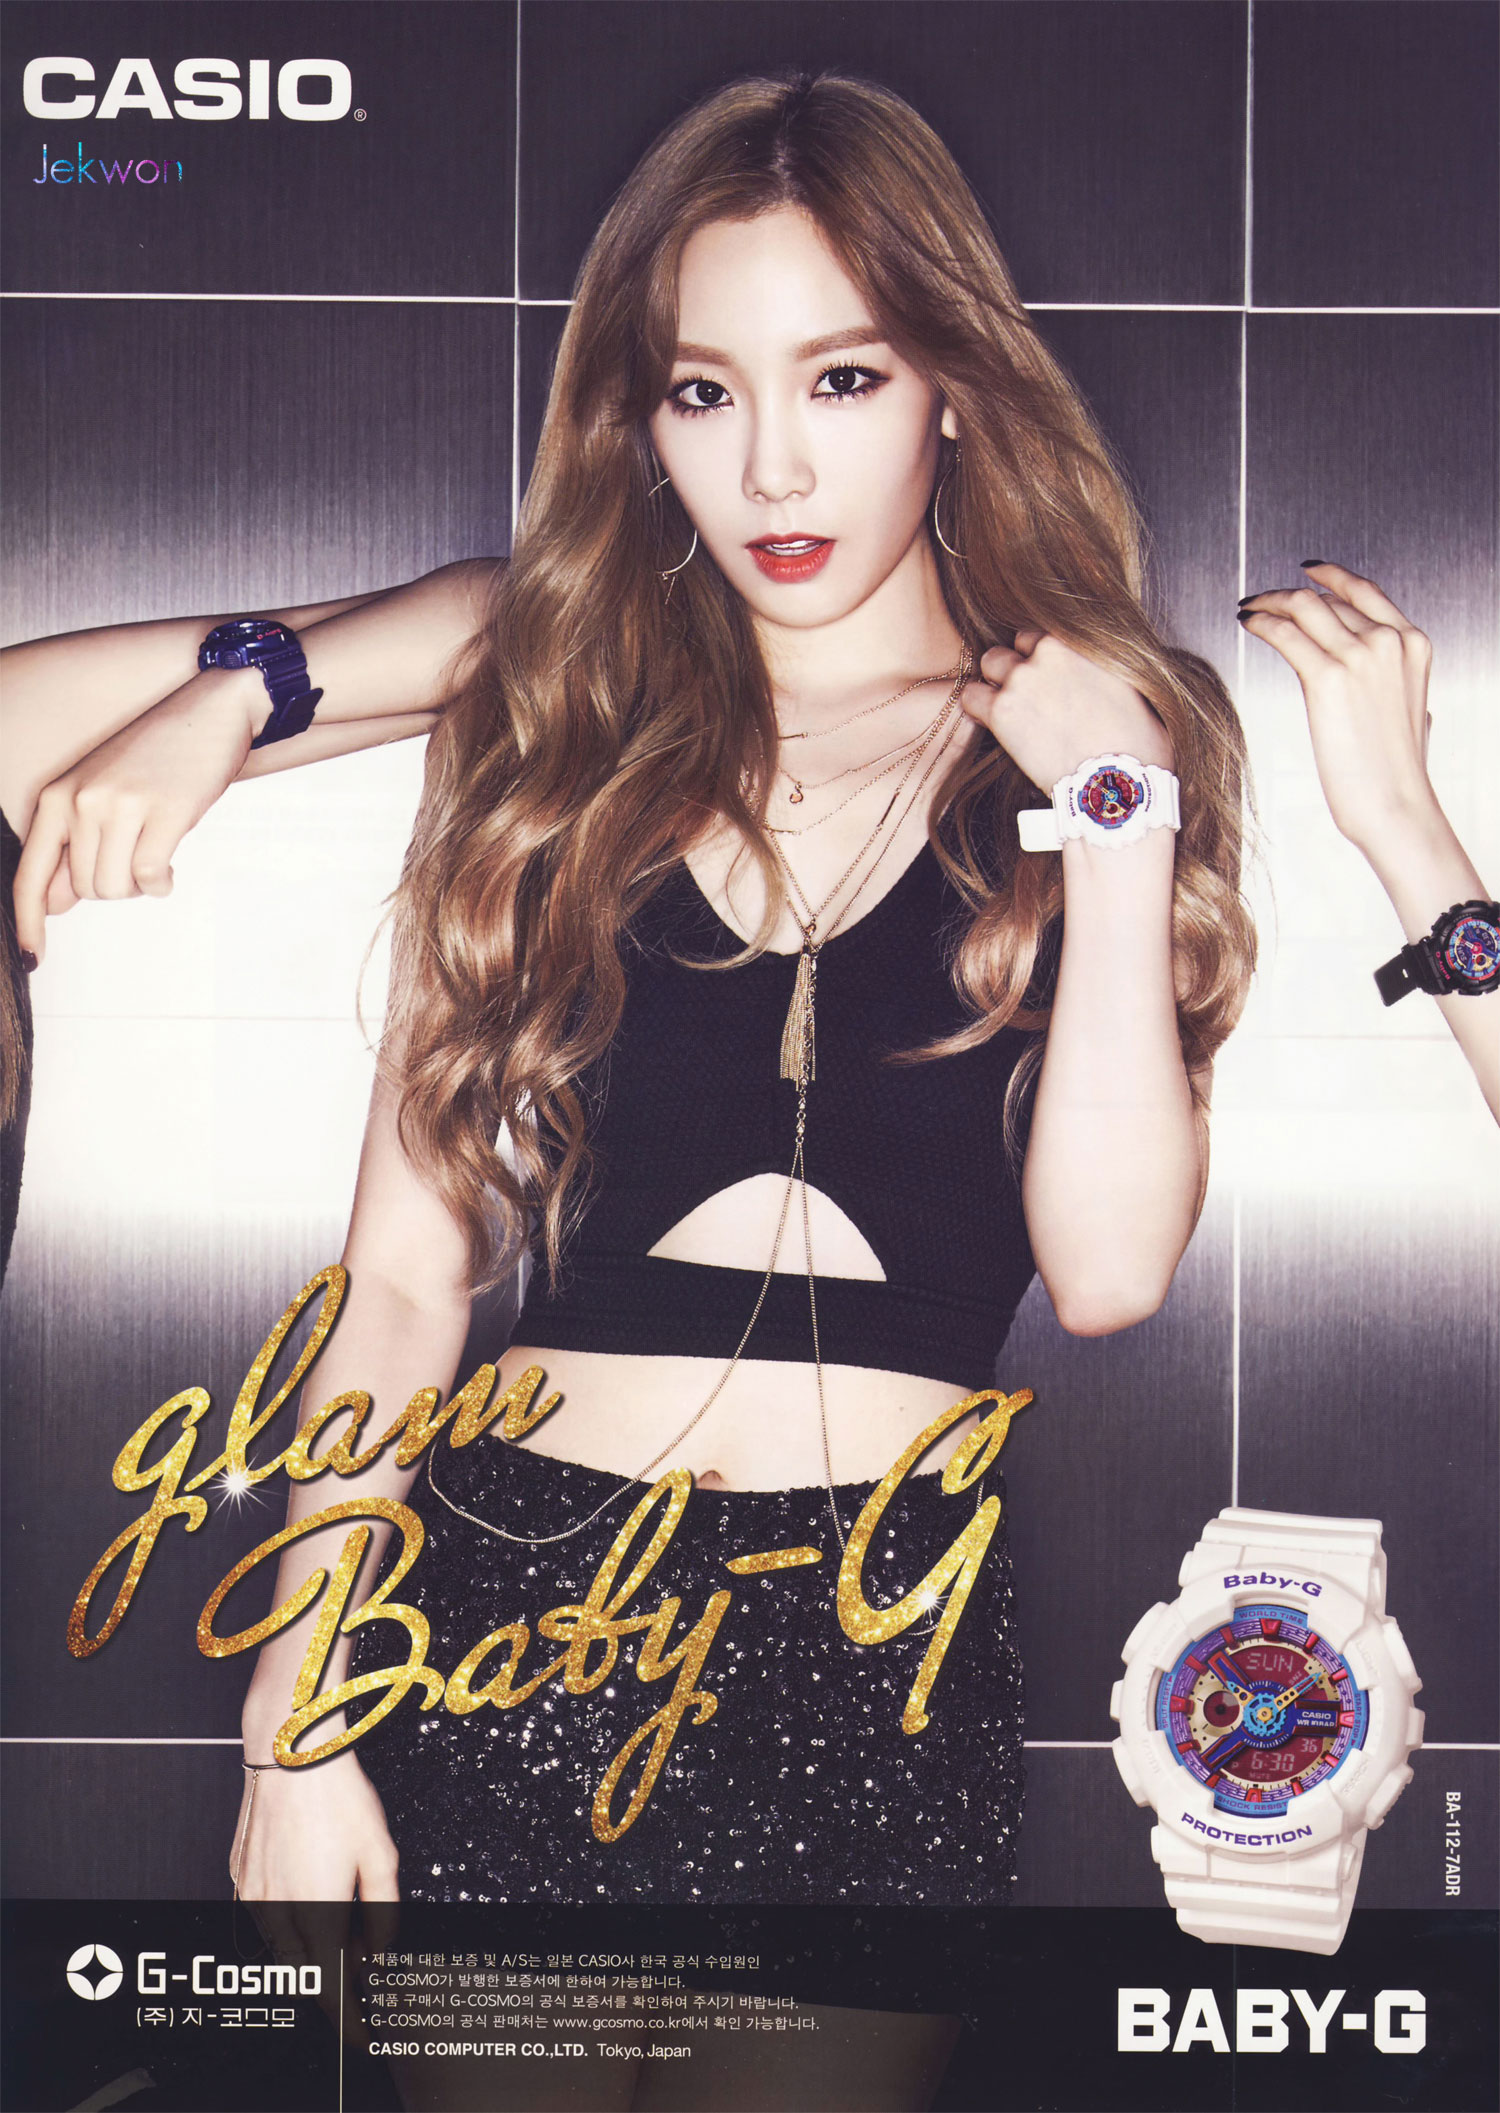 Girls Generation Taeyeon Casio BabyG Glam